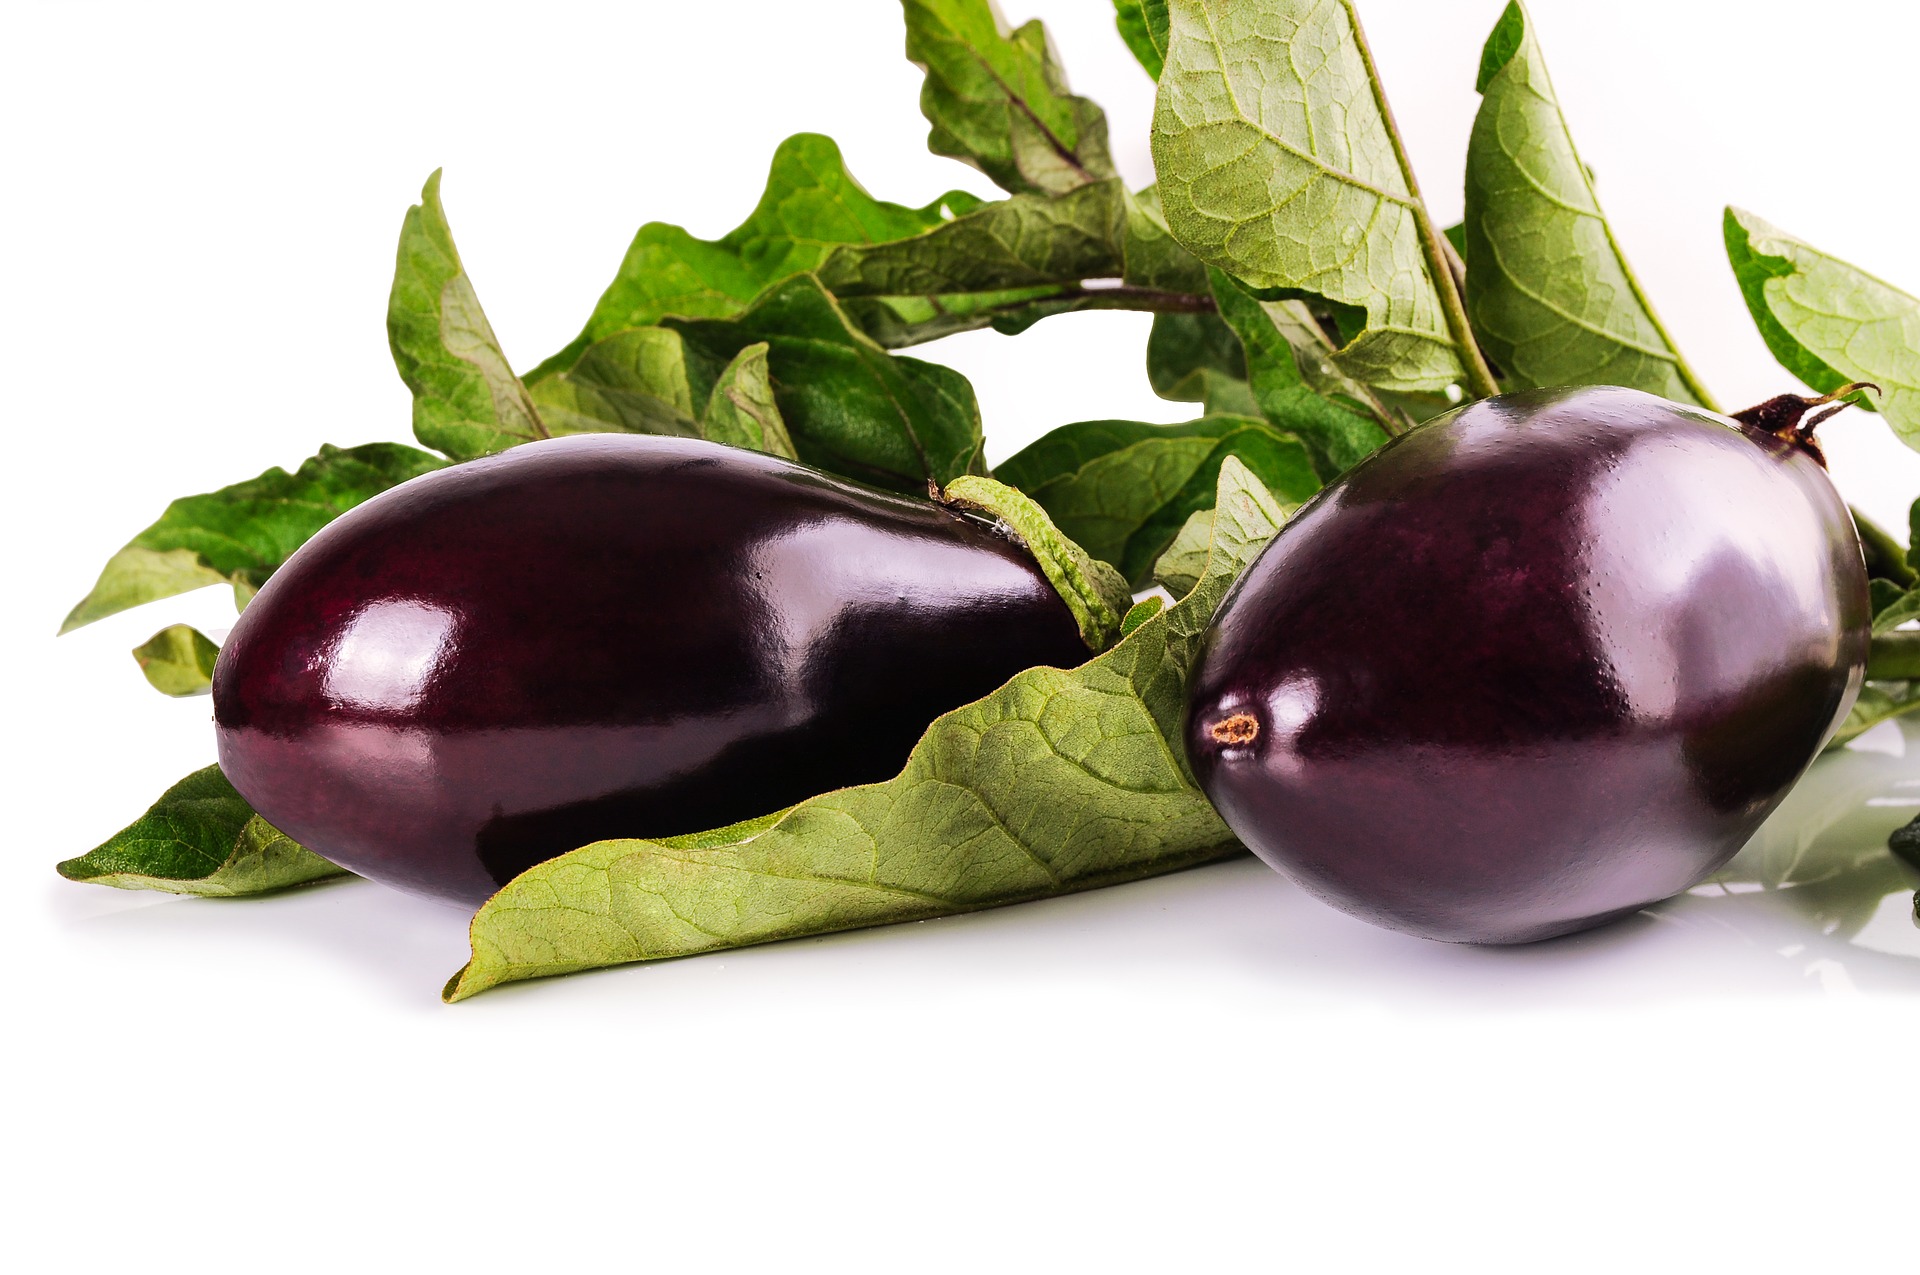 Баклажан — овощ, который используется в веганской косметике